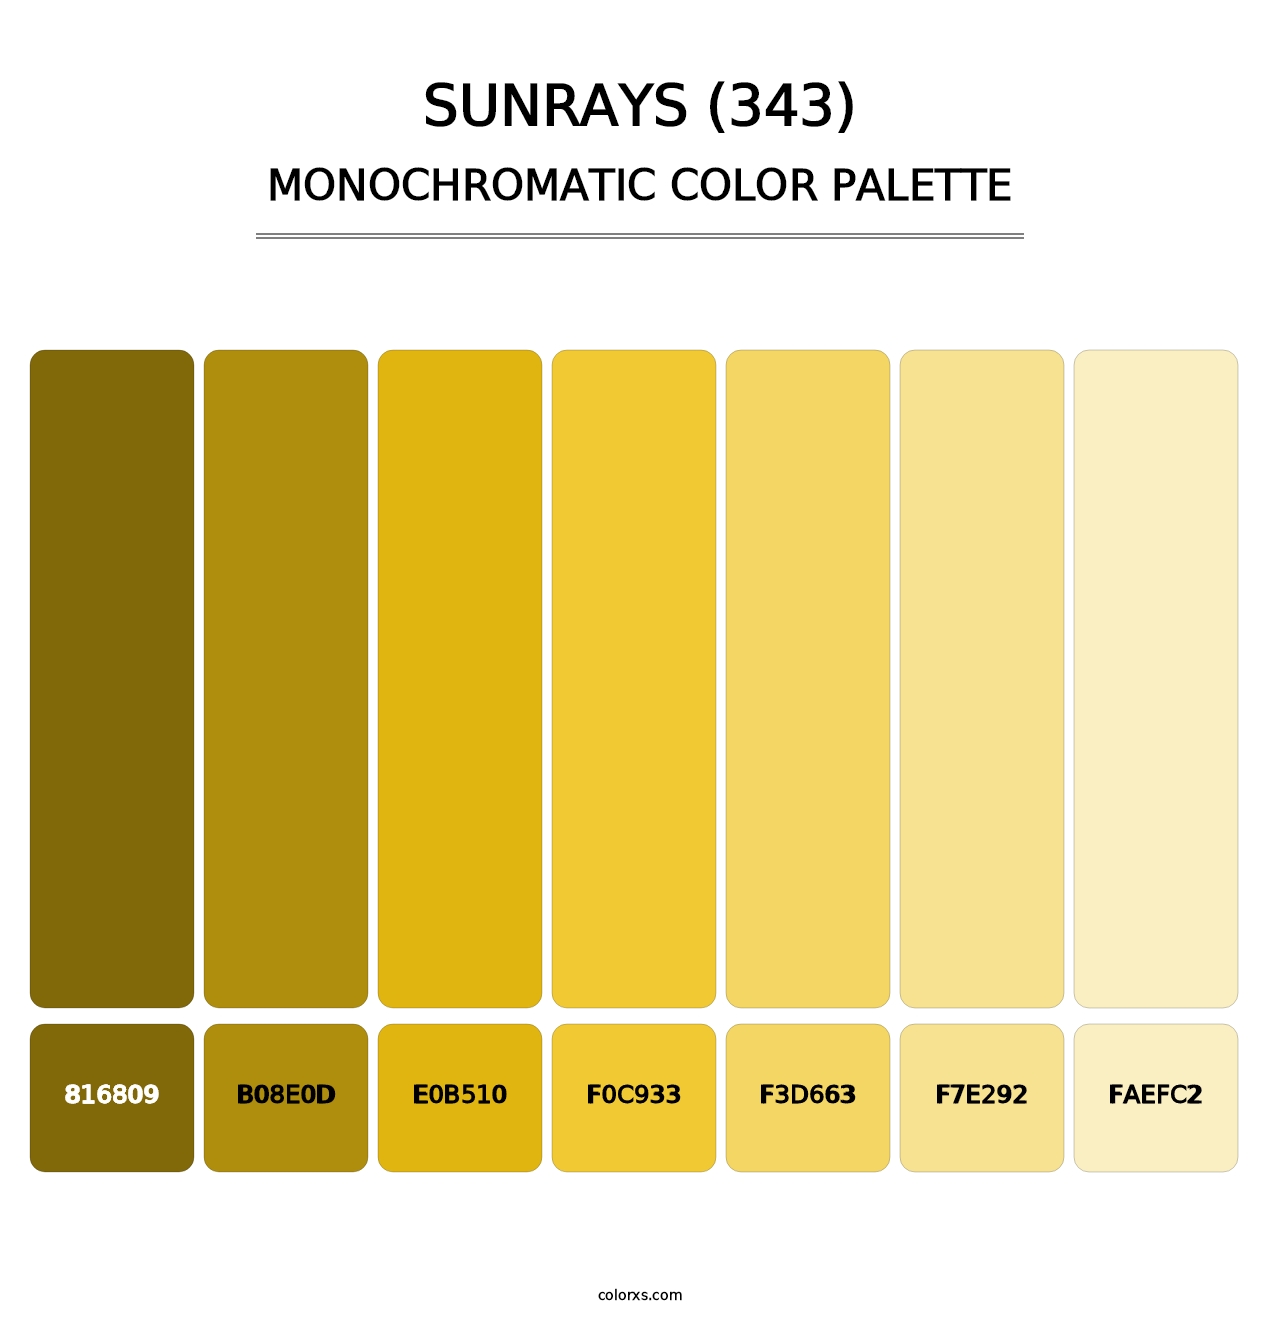 Sunrays (343) - Monochromatic Color Palette